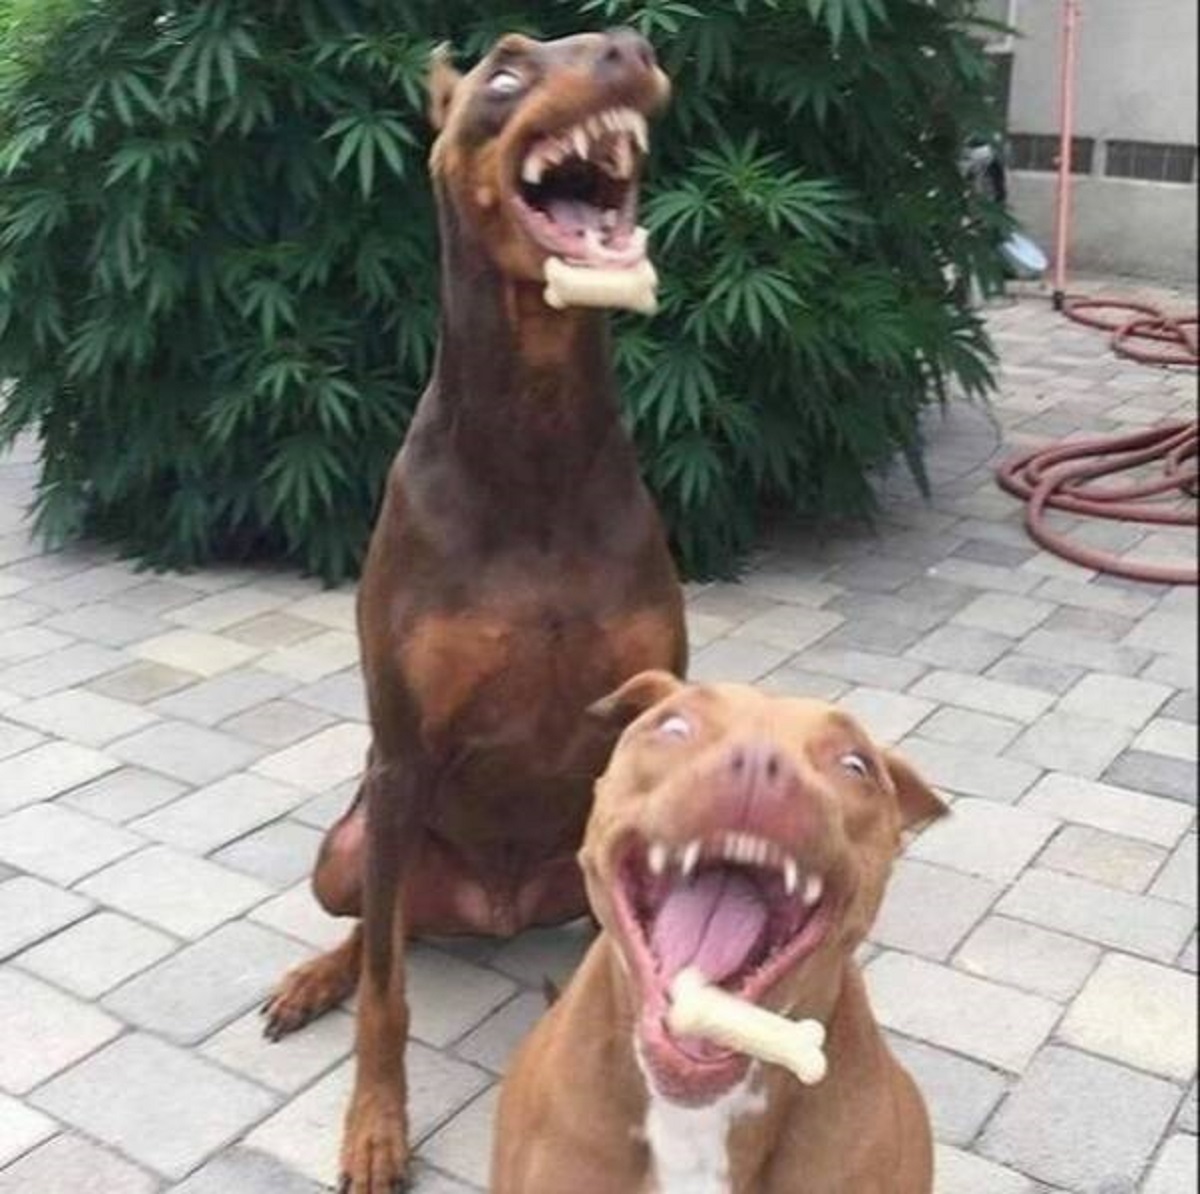 dog yawns